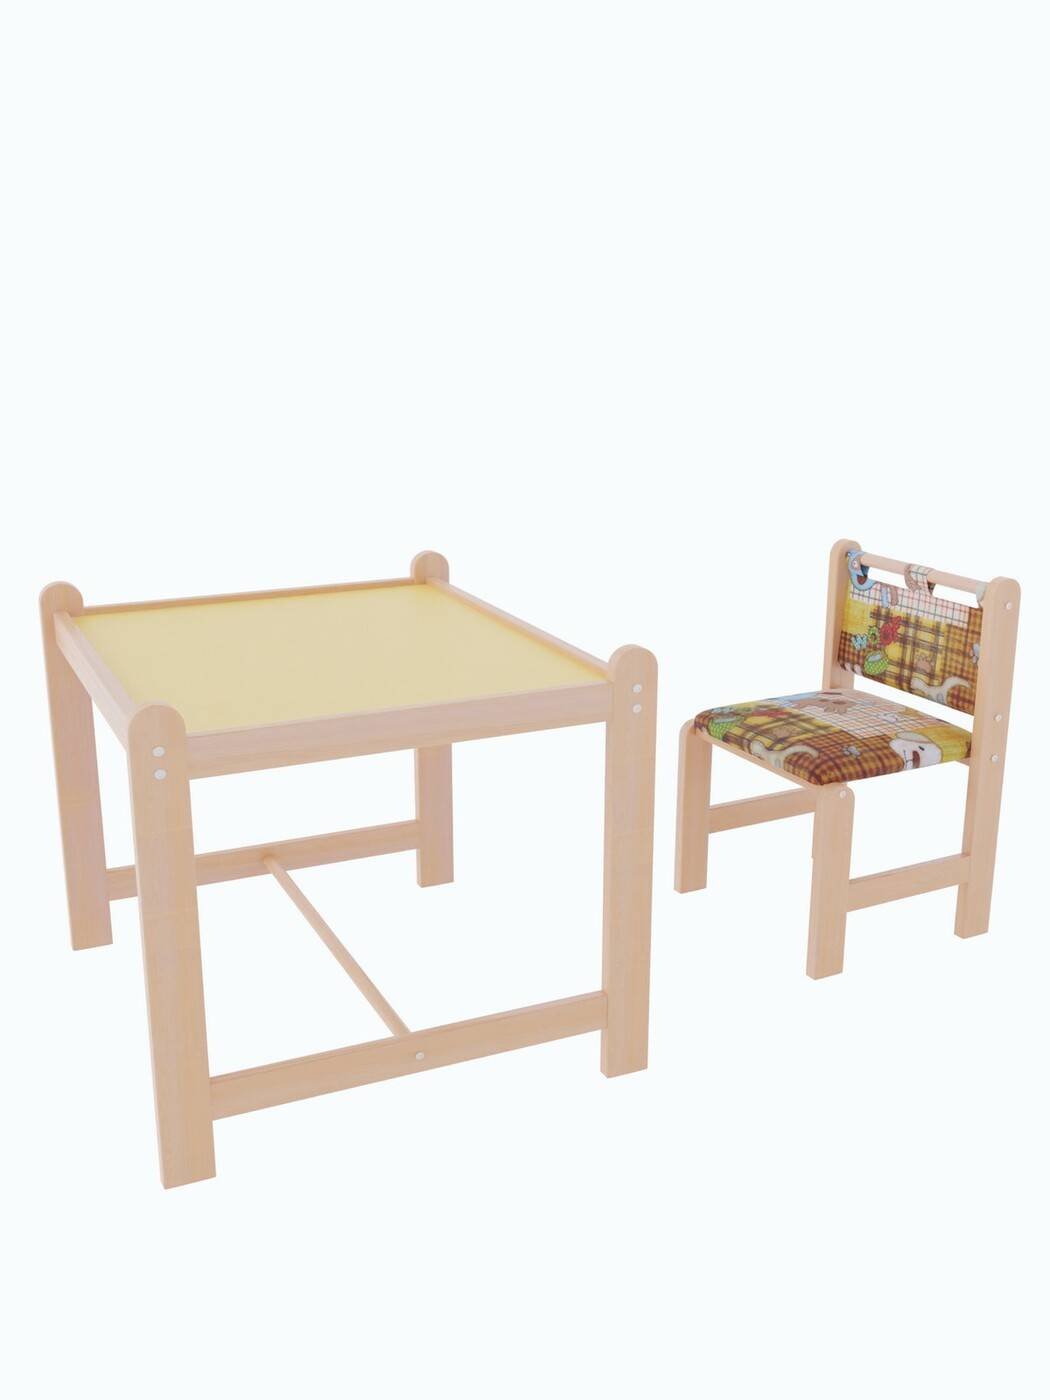 Детский столик со стульчиком (124 фото): стол и стул для ребенка, модели для детей от 1 года, 2-3 и 4-5 лет